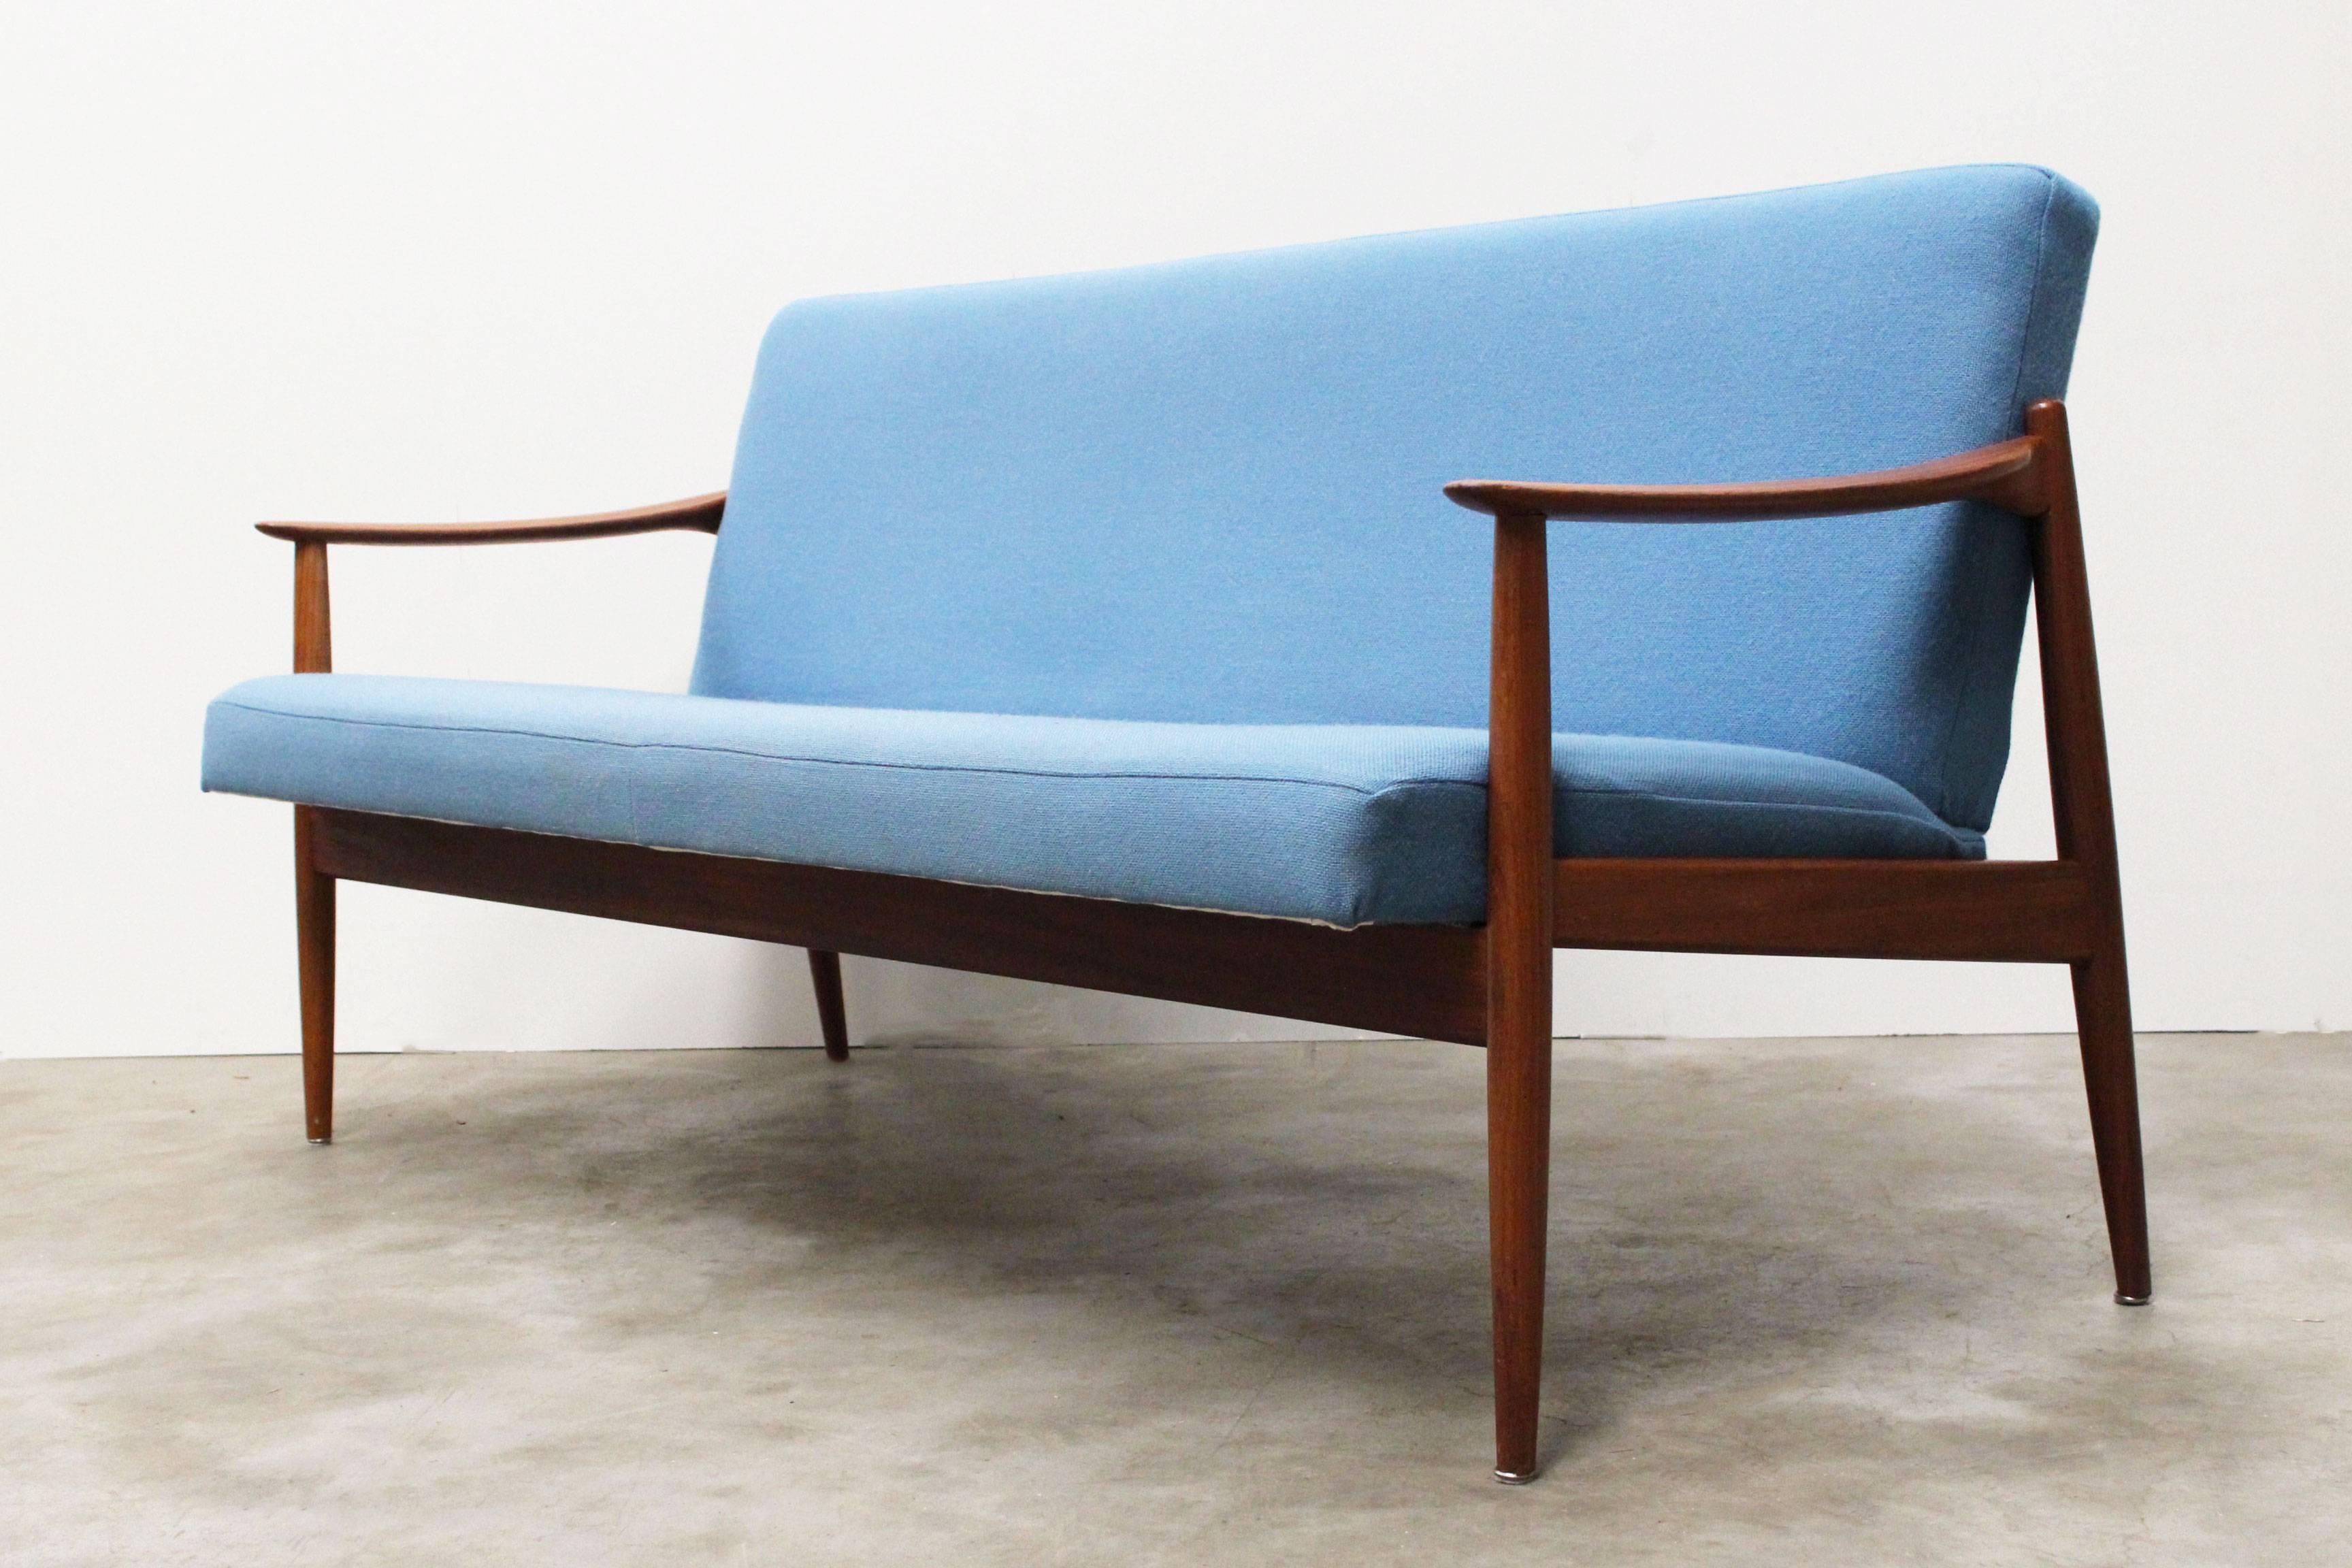 Fabric Danish Living Room Set by Torbjørn Afdal for Sandvik Mobler, 1950, Blue Teak